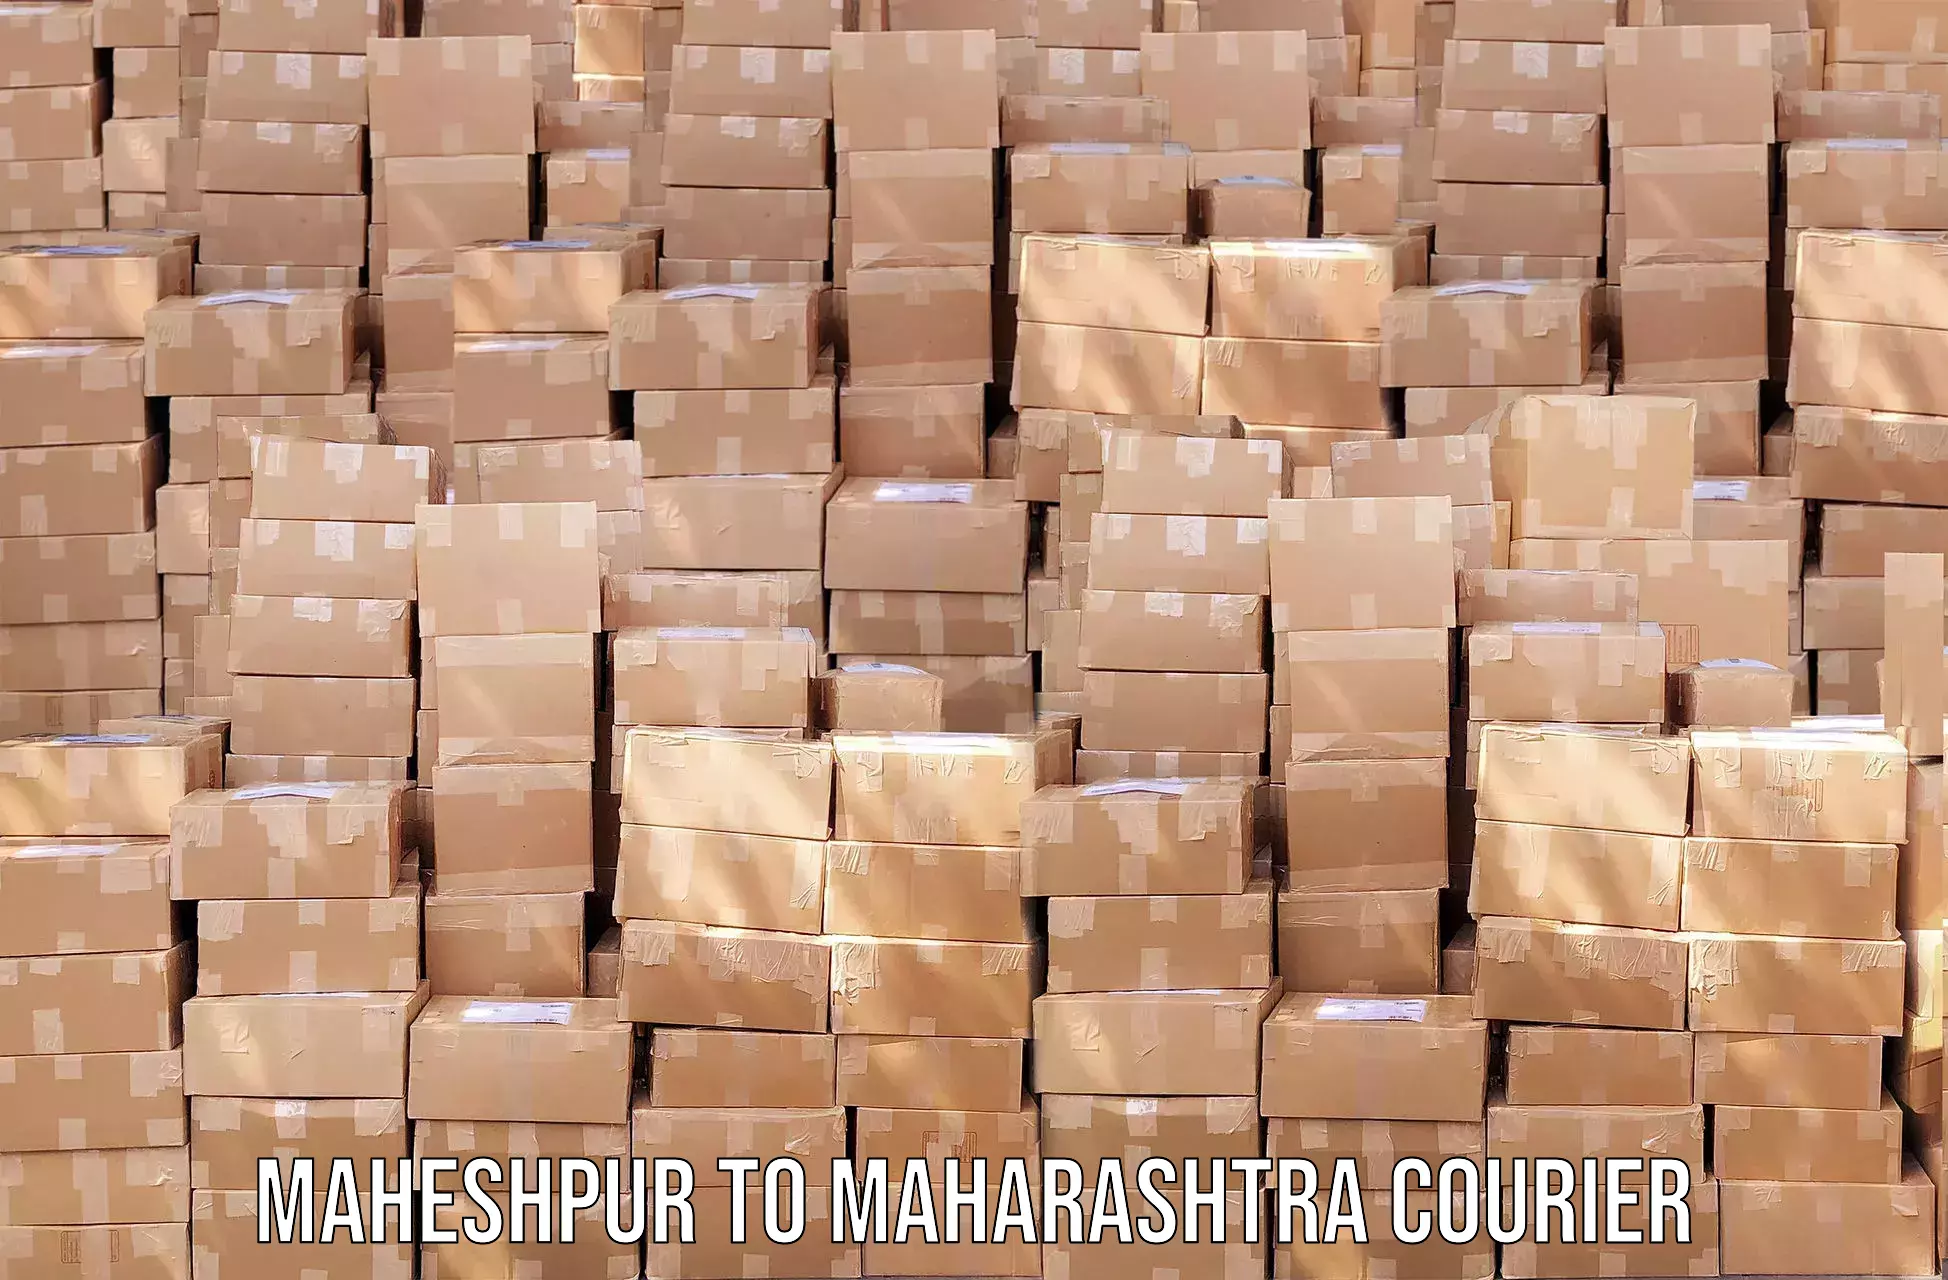 24-hour courier service Maheshpur to Maharashtra